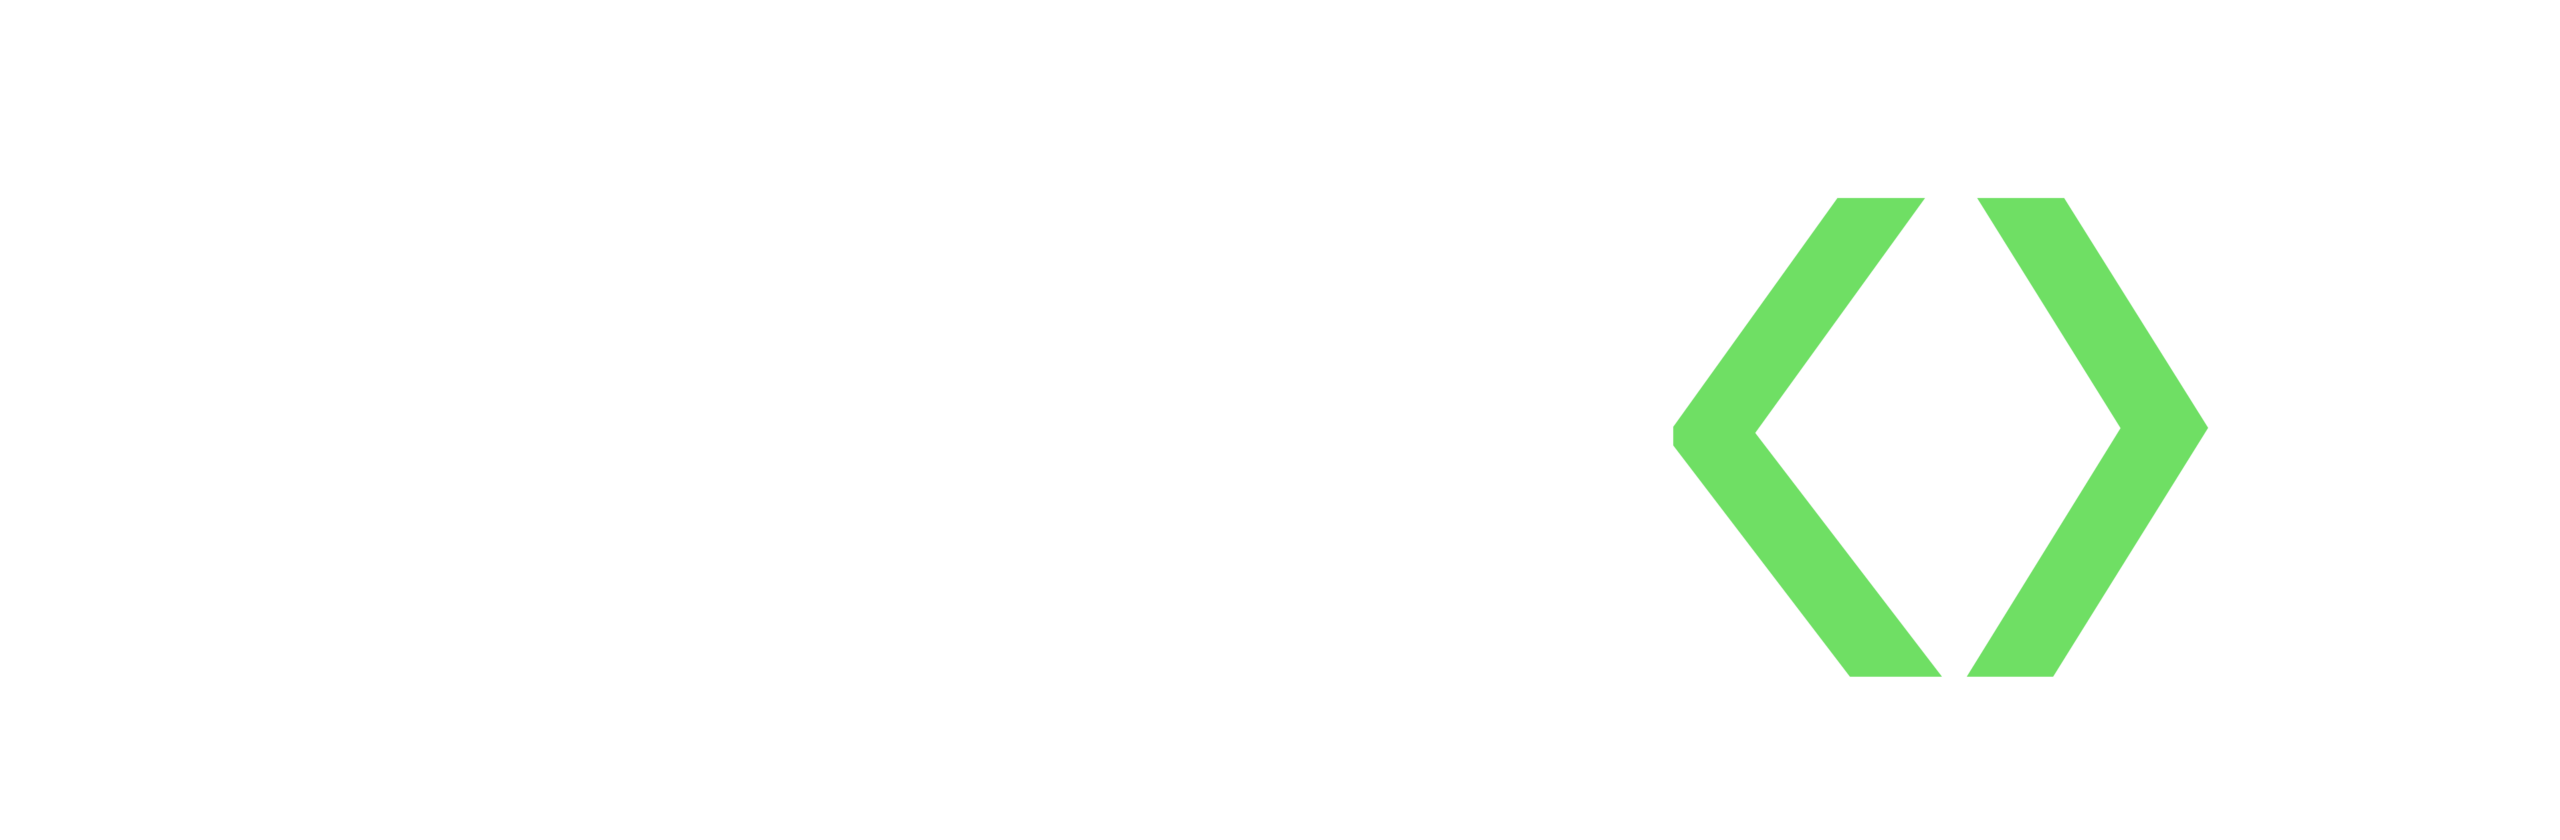 Werkx logo white and green